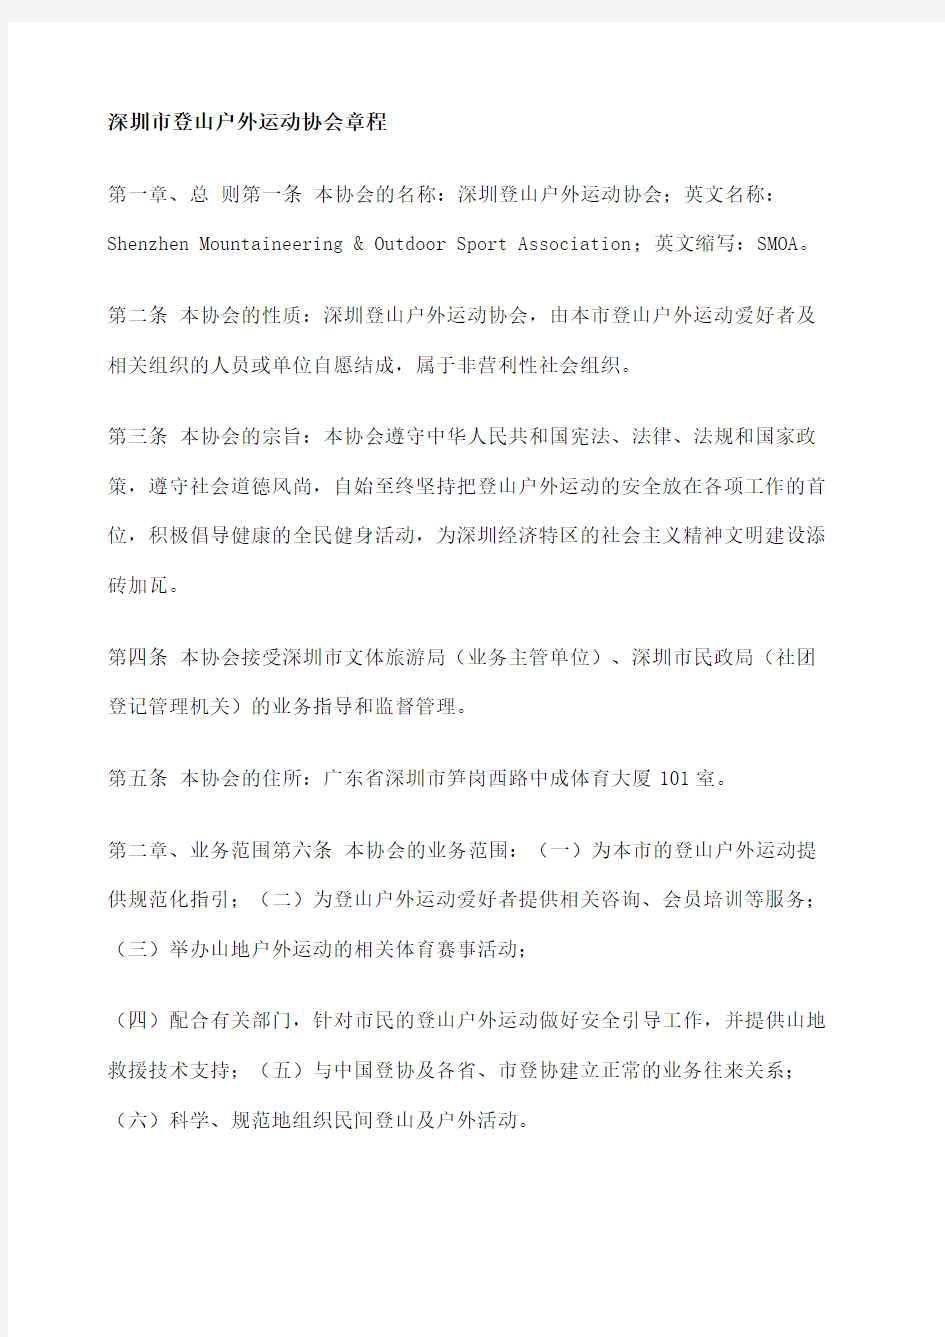 深圳市登山户外运动协会章程